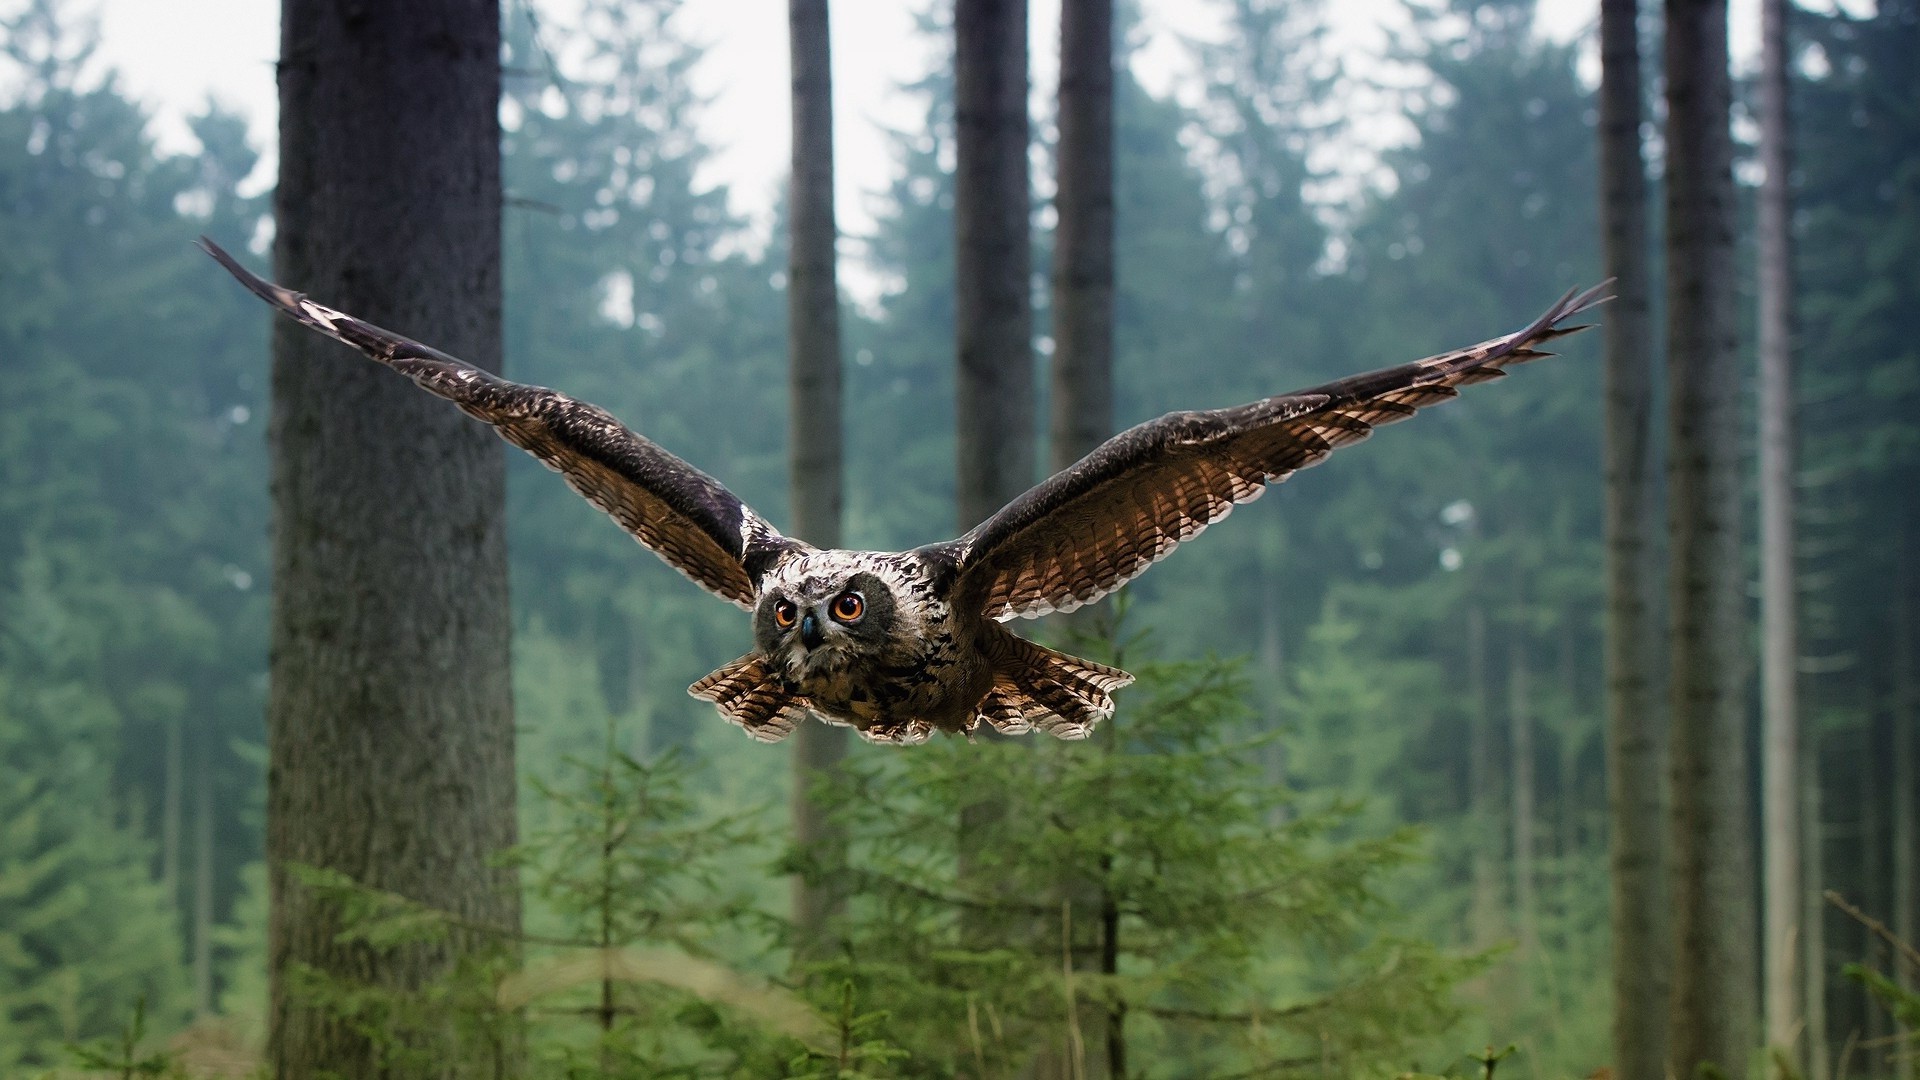 An owl flies through the forest